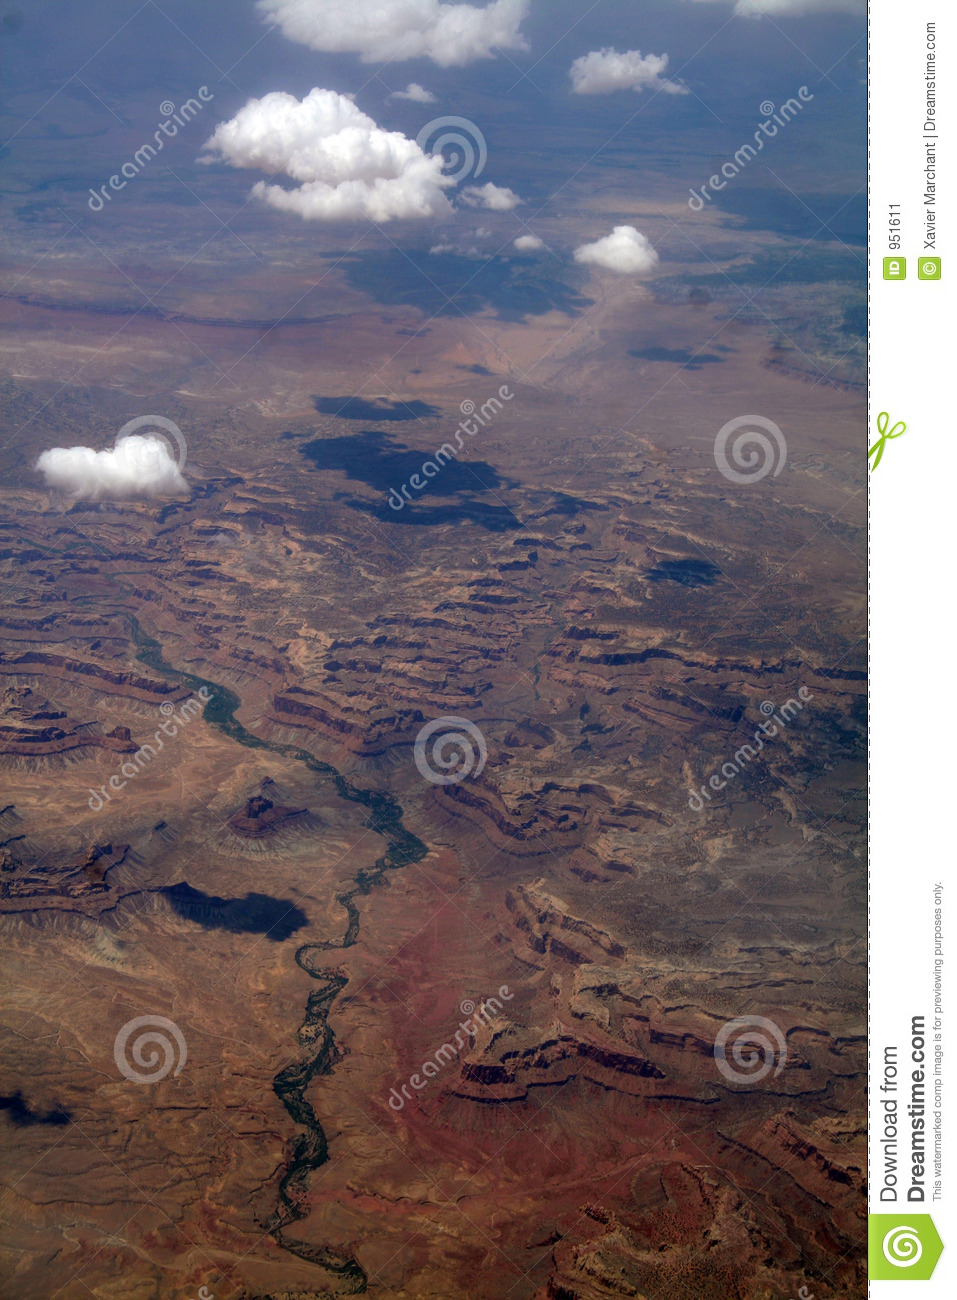 Canyon Landscape Stock Image   Image  951611